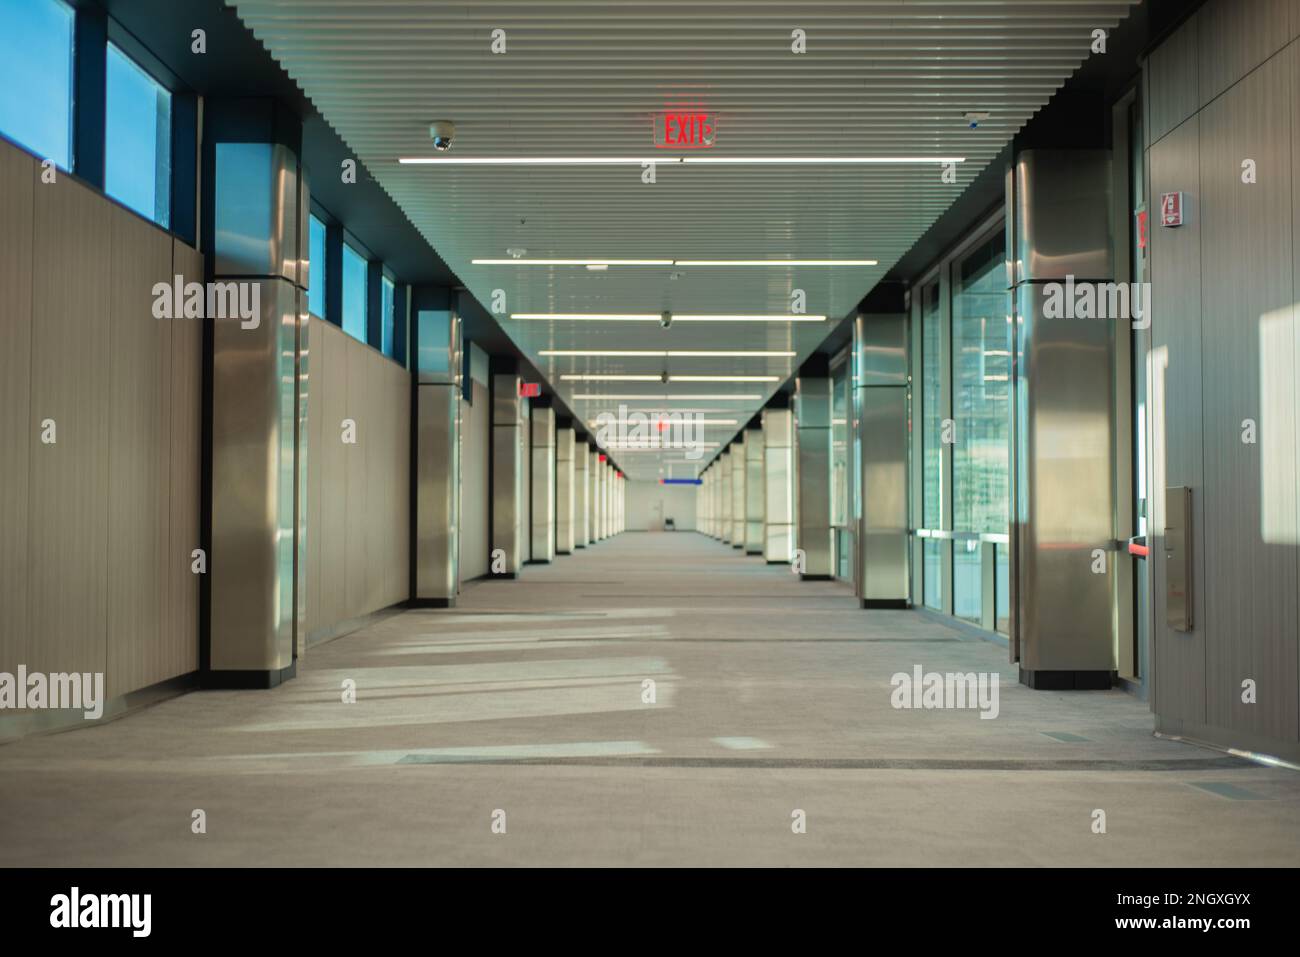 corridoio di edificio vuoto con segnaletica di uscita illuminata in rosso e finestre su un lato, non c'è gente Foto Stock